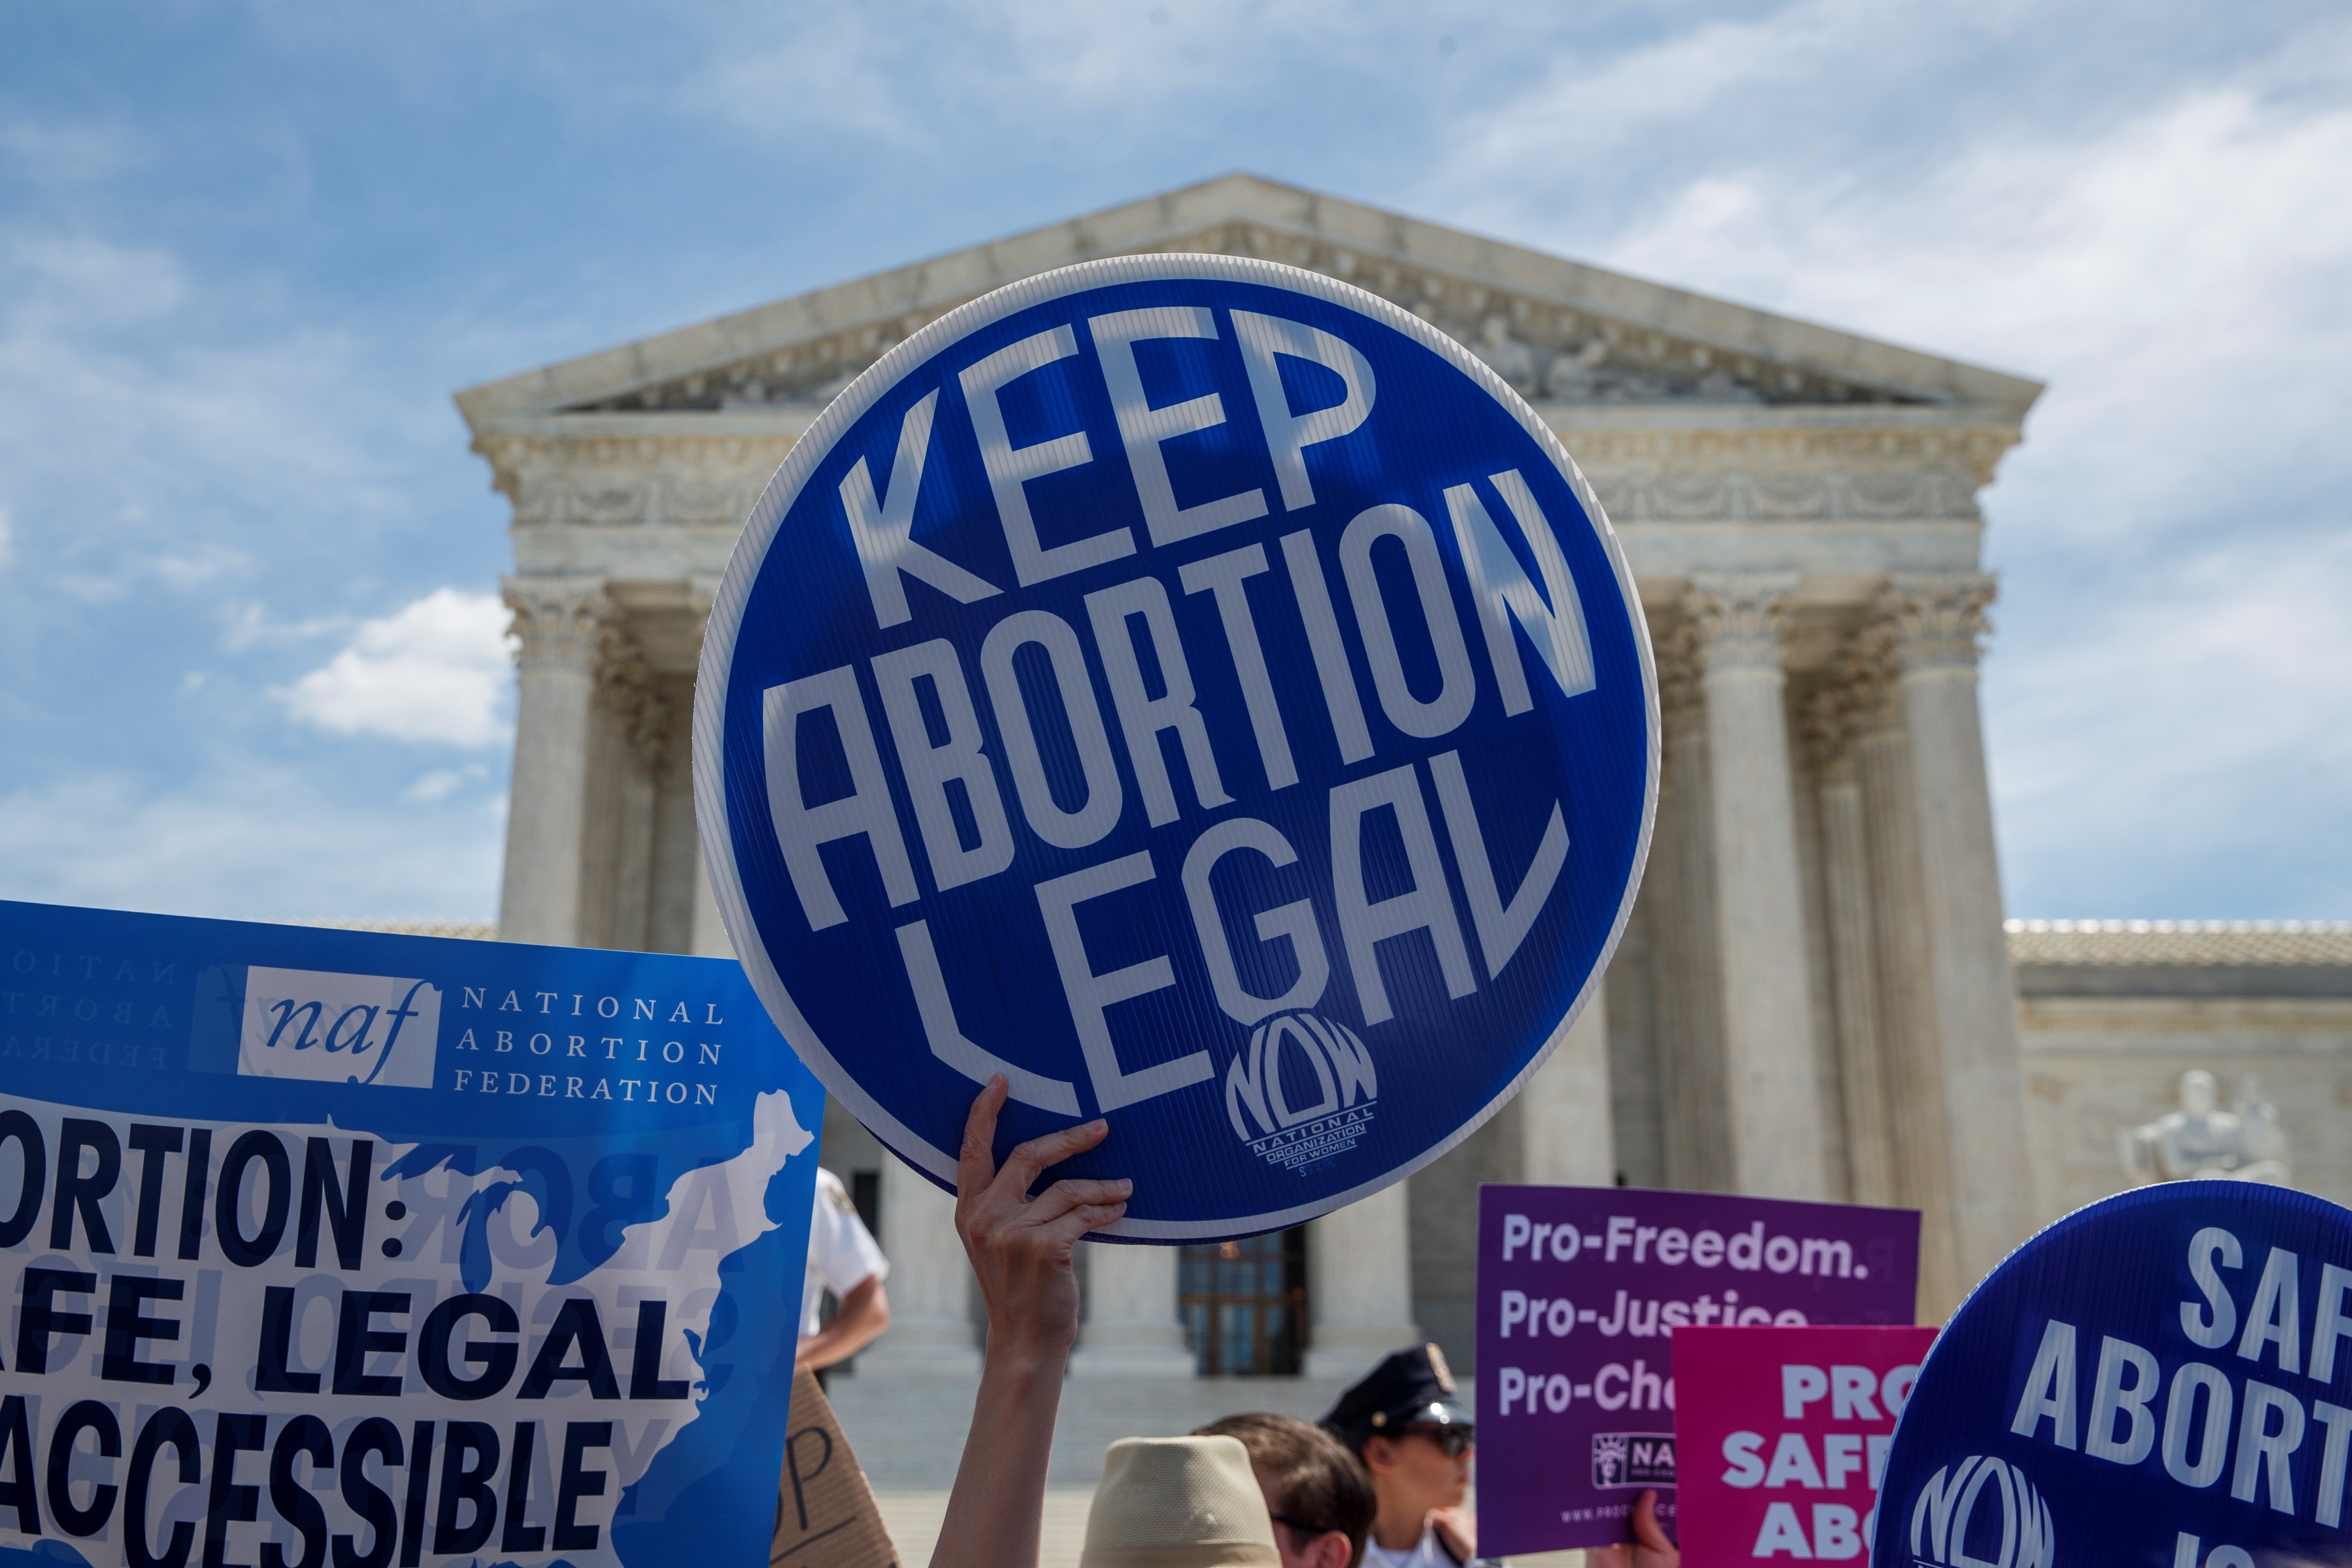 El Legislativo de Florida señaló este jueves que "sin duda" presentará una iniciativa contra el aborto similar a la polémica ley que entró en vigencia el martes pasado en Texas, que prohíbe abortar desde las seis semanas de gestación